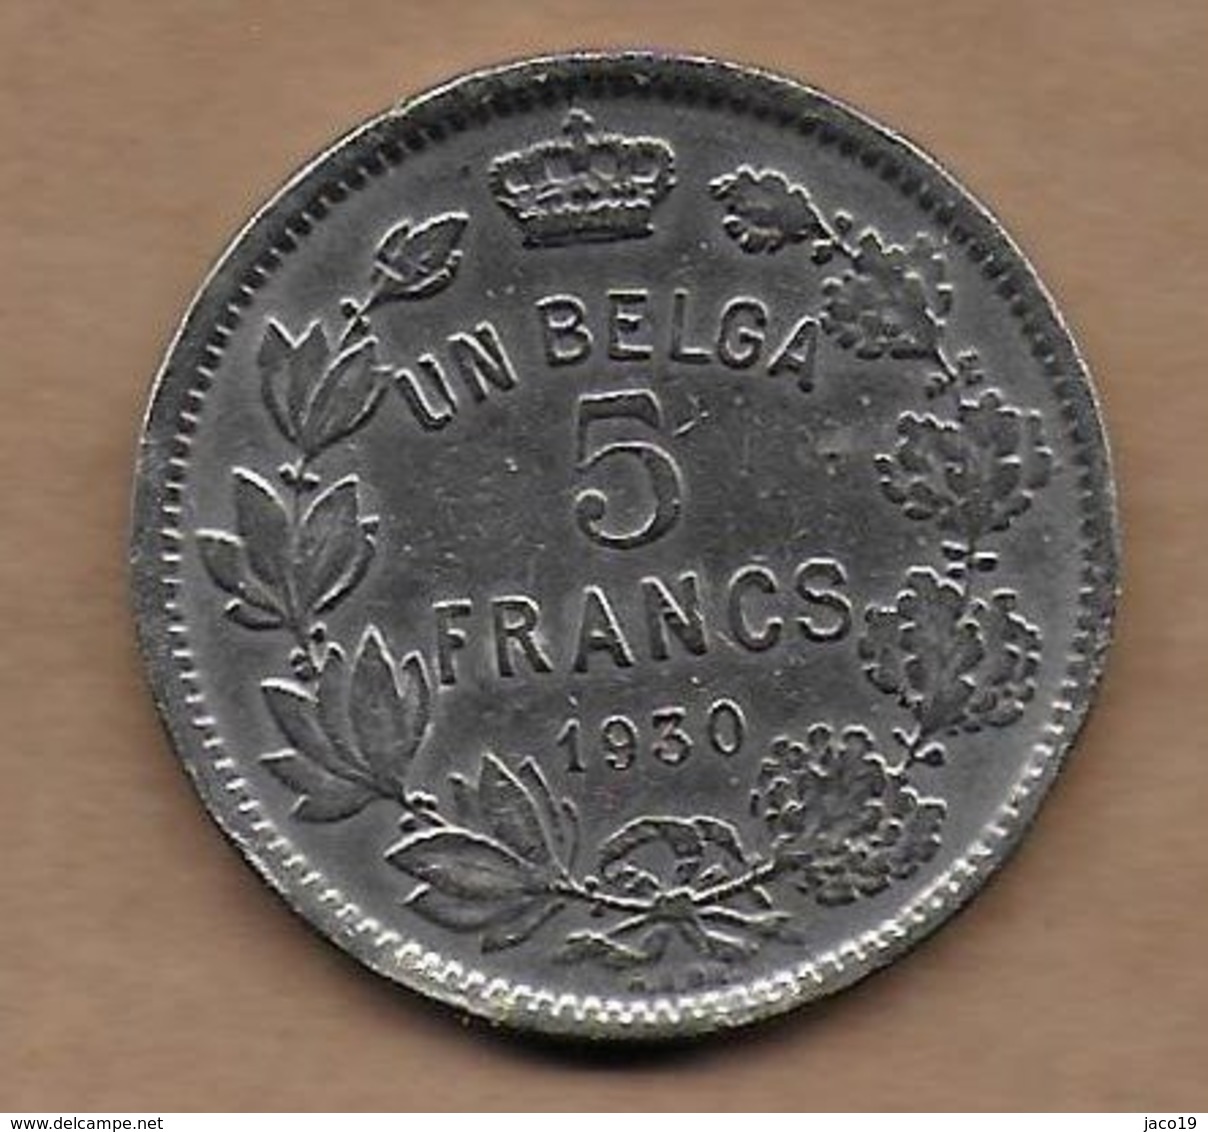 5 Francs Un Belga Nickel 1930 FR Pos . A - 5 Francs & 1 Belga